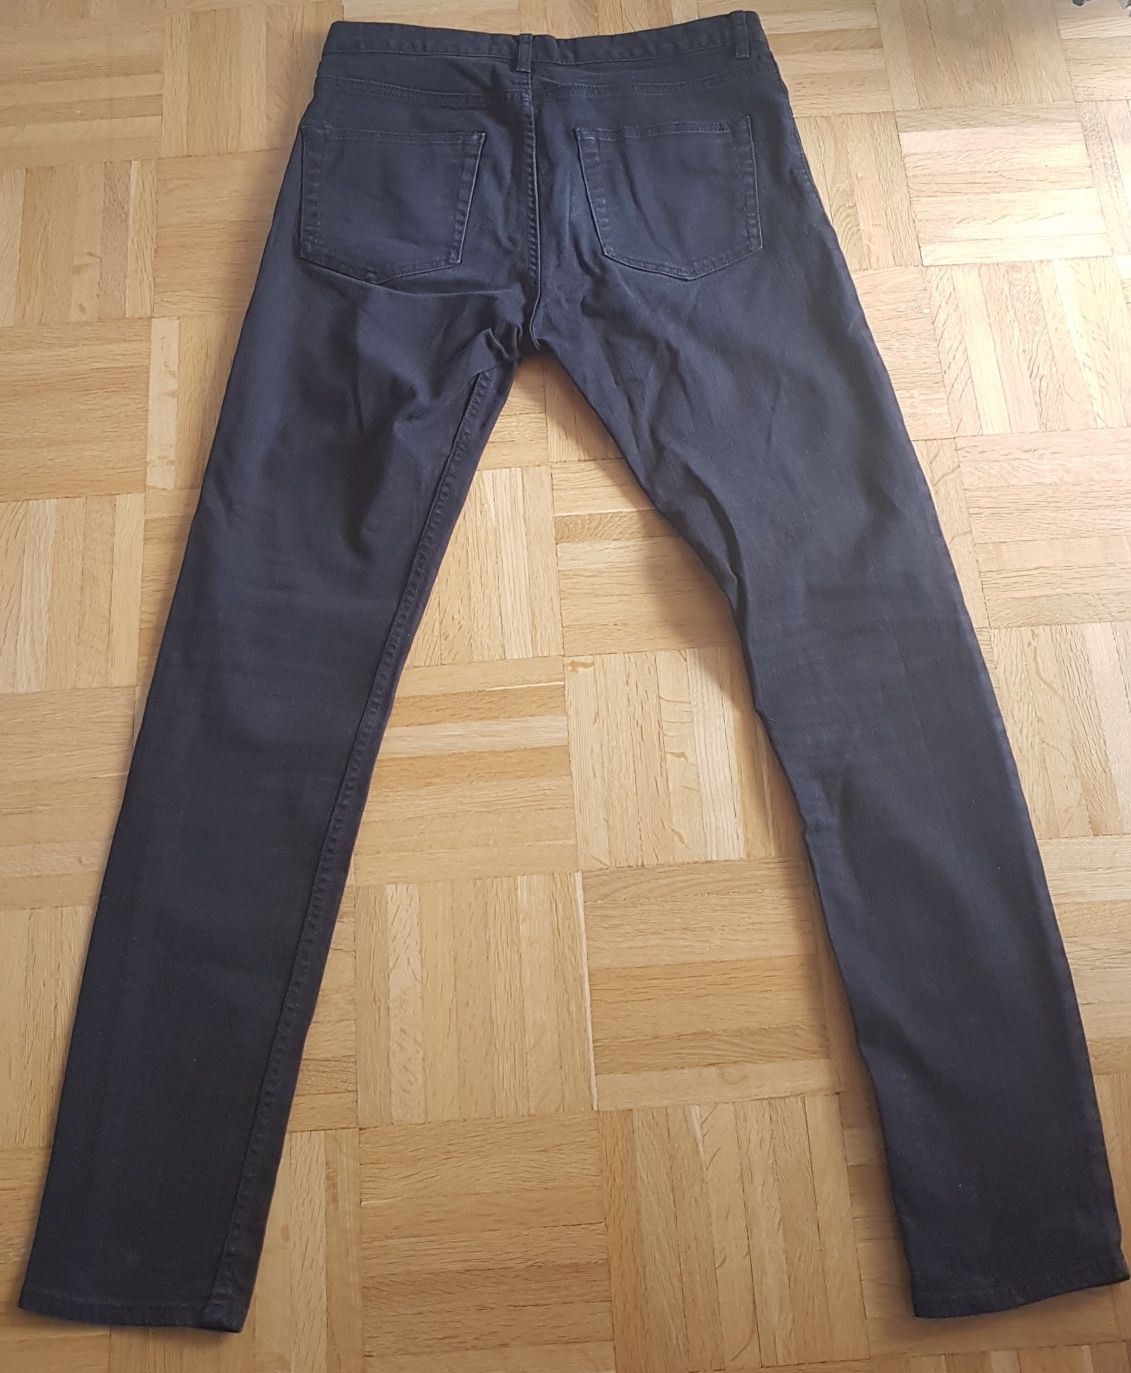 H&M spodnie jeansy r. 29 czarne